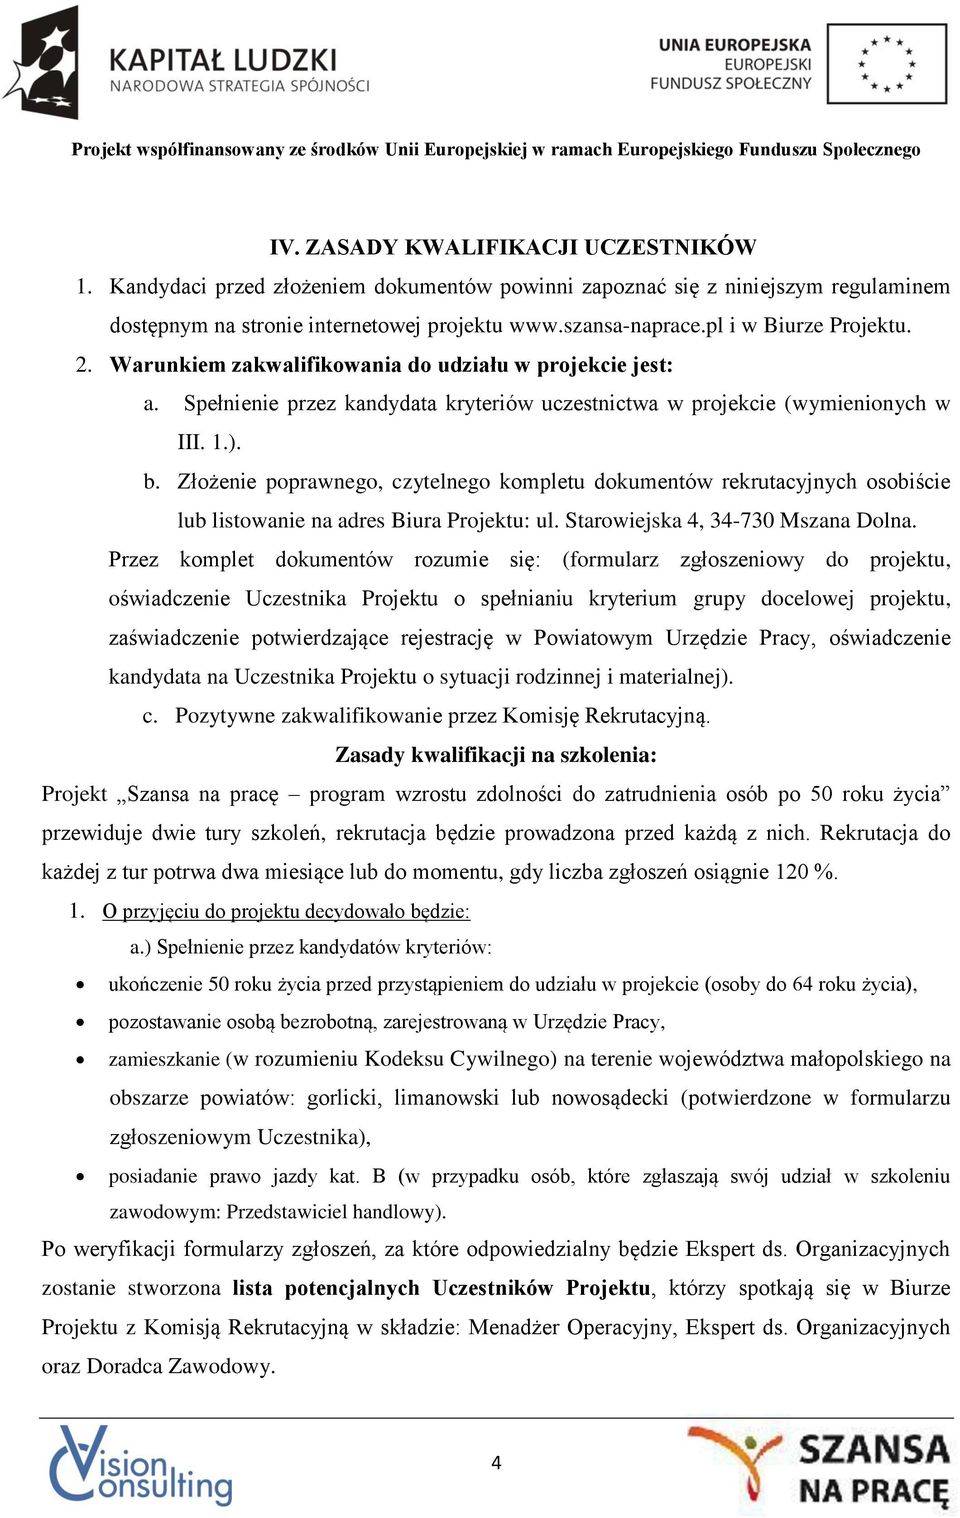 Złożenie poprawnego, czytelnego kompletu dokumentów rekrutacyjnych osobiście lub listowanie na adres Biura Projektu: ul. Starowiejska 4, 34-730 Mszana Dolna.